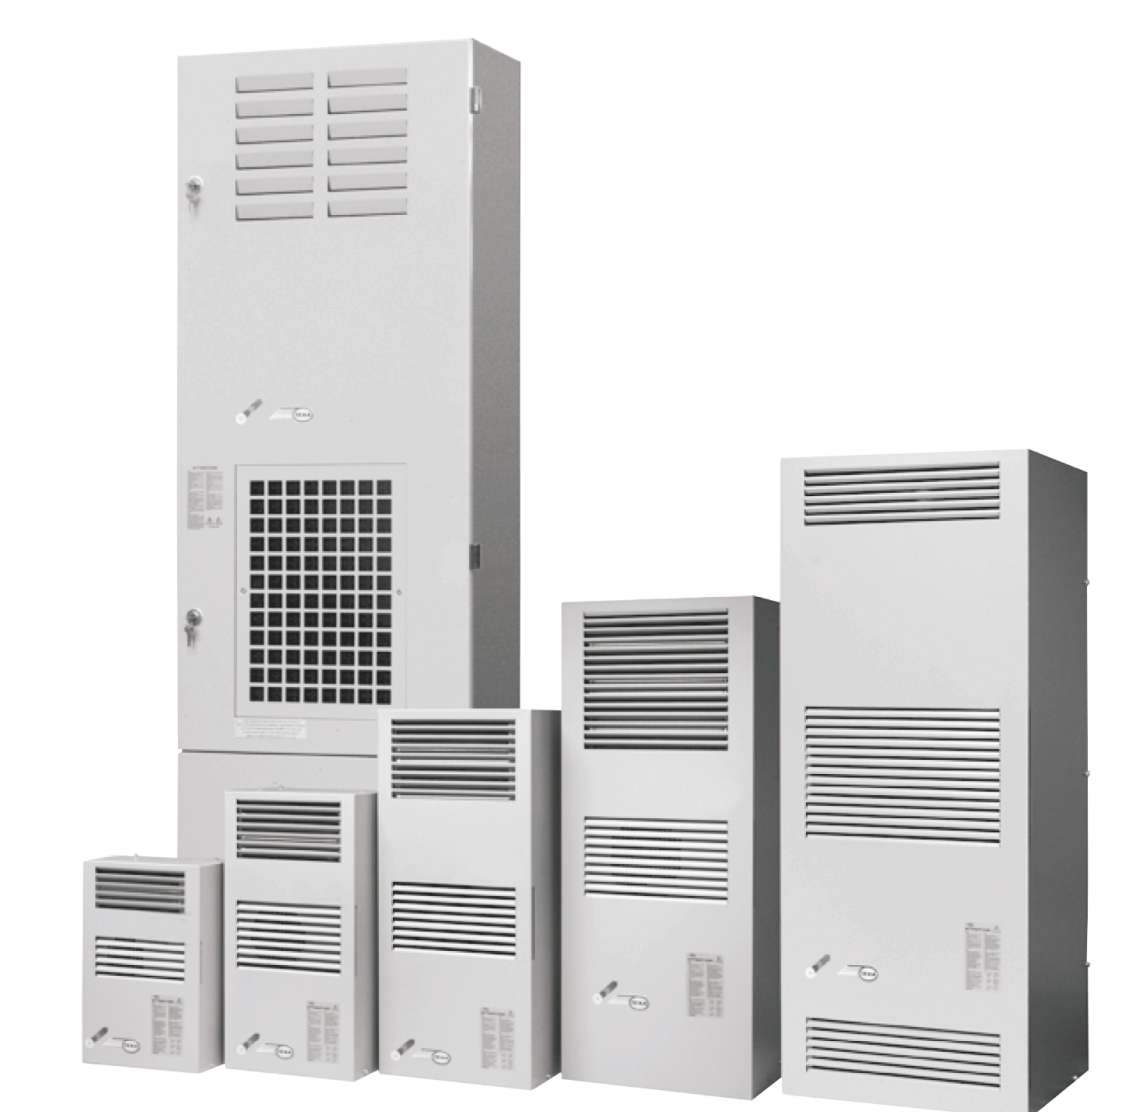 Air conditioner EGO20 (230V, 50-60Hz, 2000W)